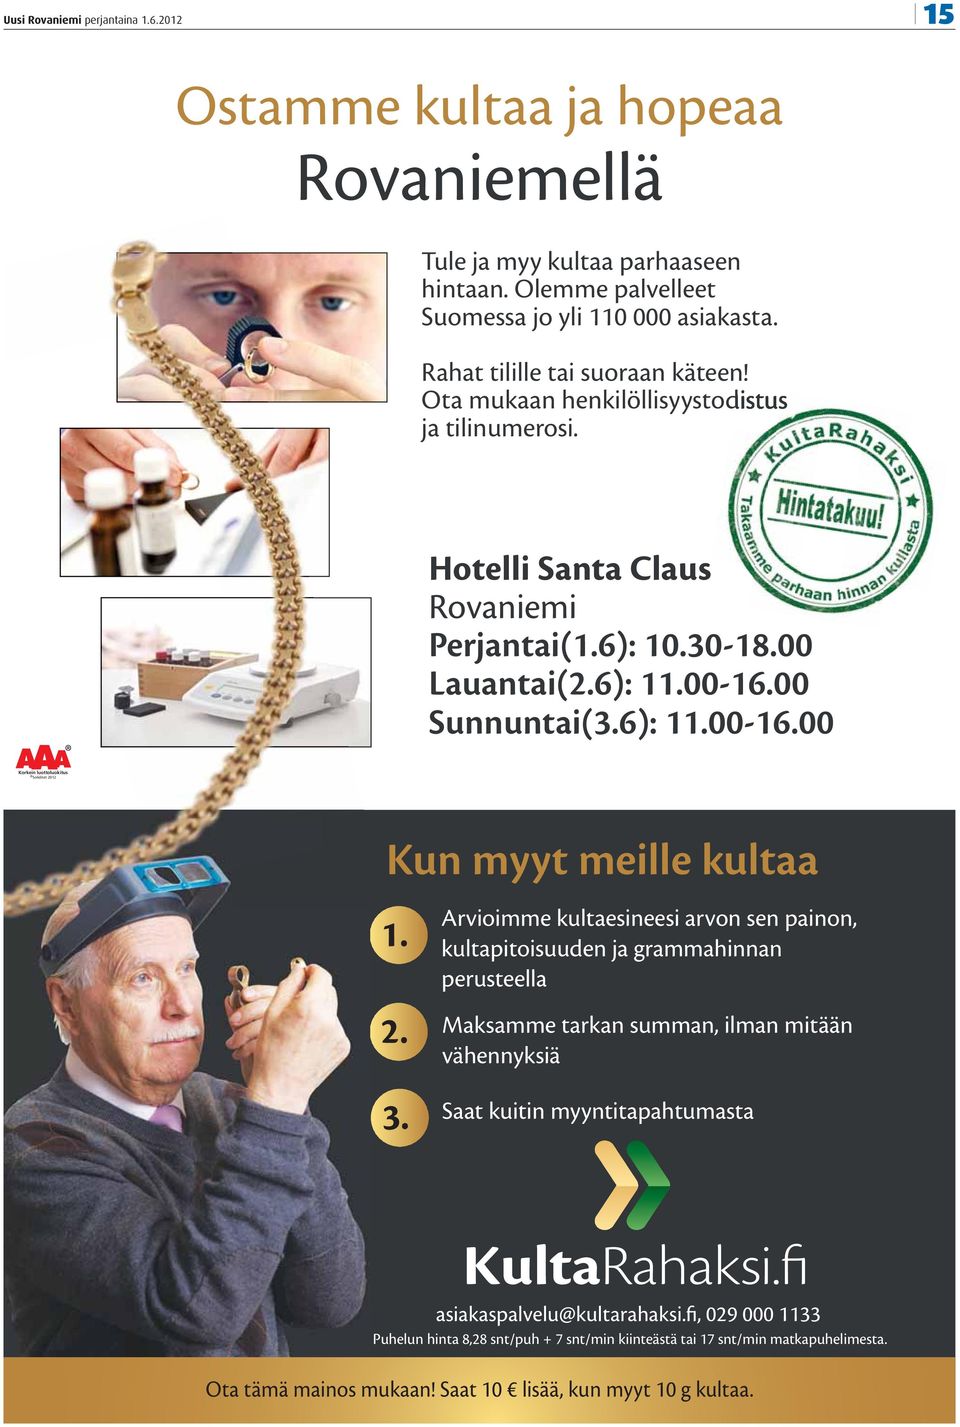 00 Sunnuntai(3.6): 11.00-16.00 Korkein luottoluokitus Soliditet 2012 Kun myyt meille kultaa 1. 2. 3.